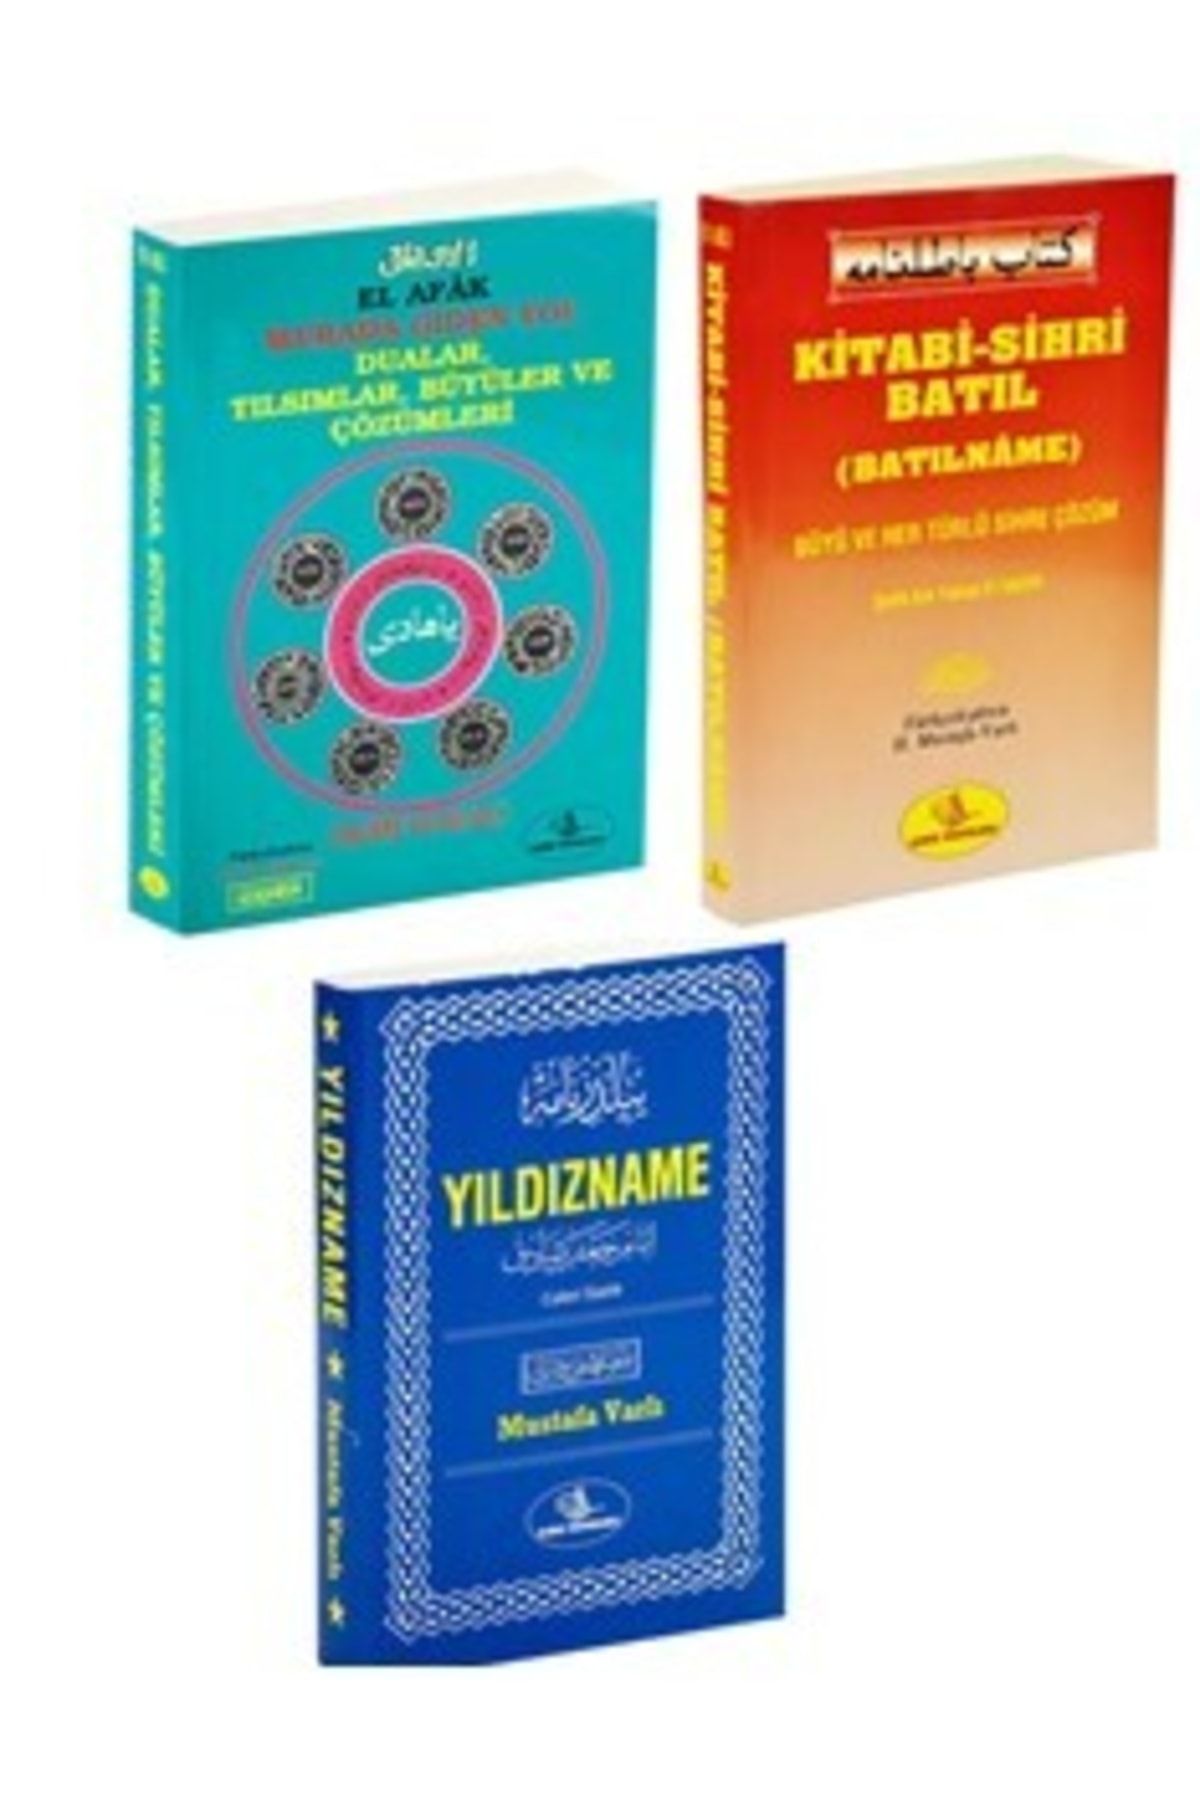 Esma Yayınları Özel Sırlı Gizli 3 Lü Dua Ve Havas Kitapları Sihribatıl-el Afak-yıldızname